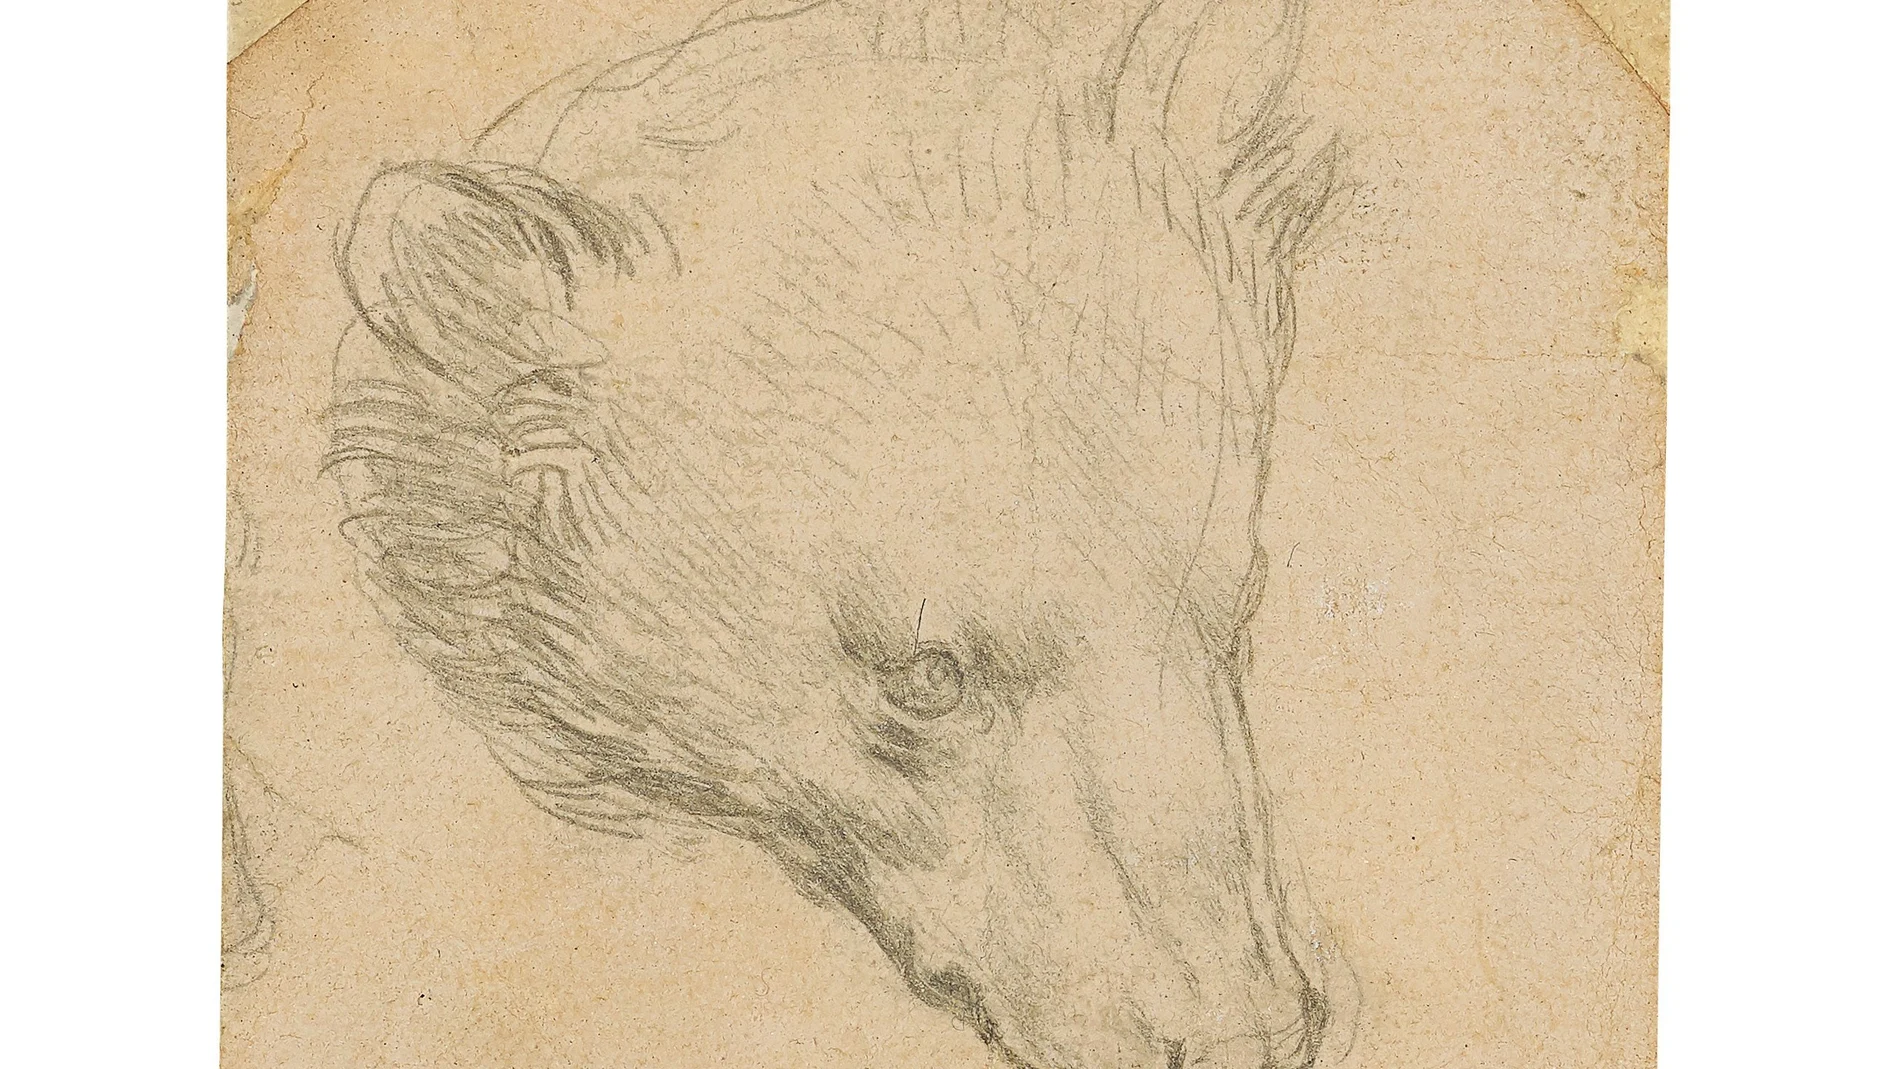 "Head of a bear", dibujo de Leonardo da Vinci